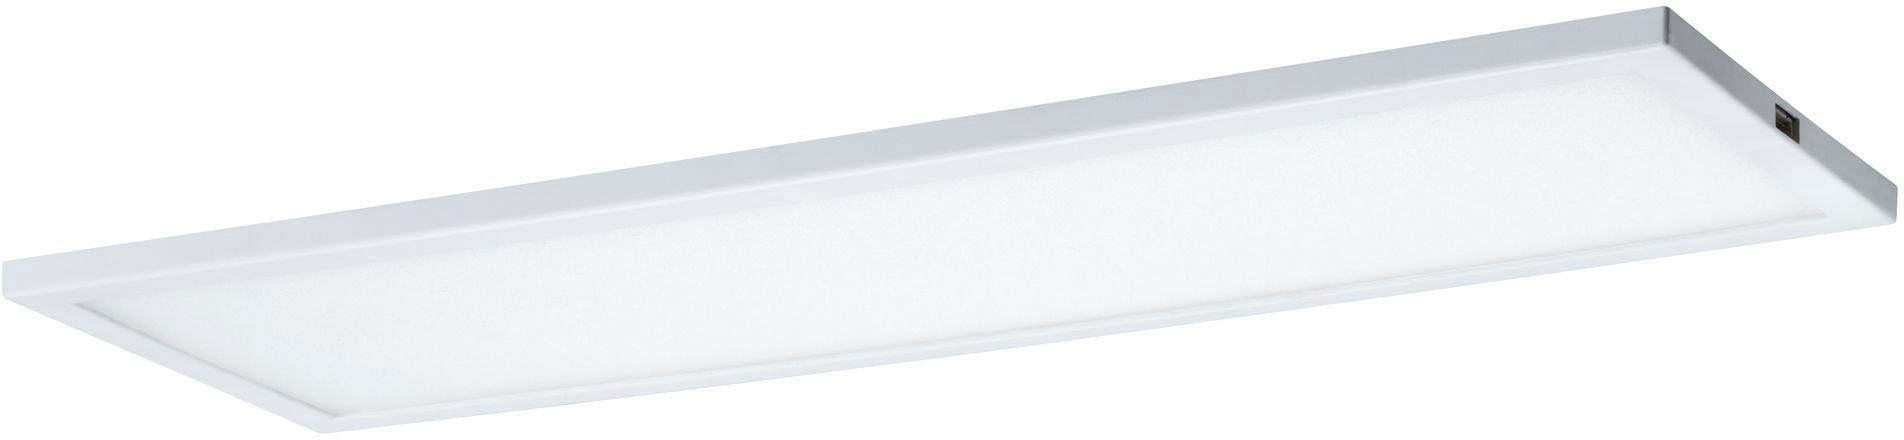 Paulmann Unterschrankleuchte LED Ace Ace fest Erweiterung, Weiß Panel 7,5W Erweiterung LED Panel 10x30cm LED 7,5W 10x30cm integriert, Warmweiß, Weiß